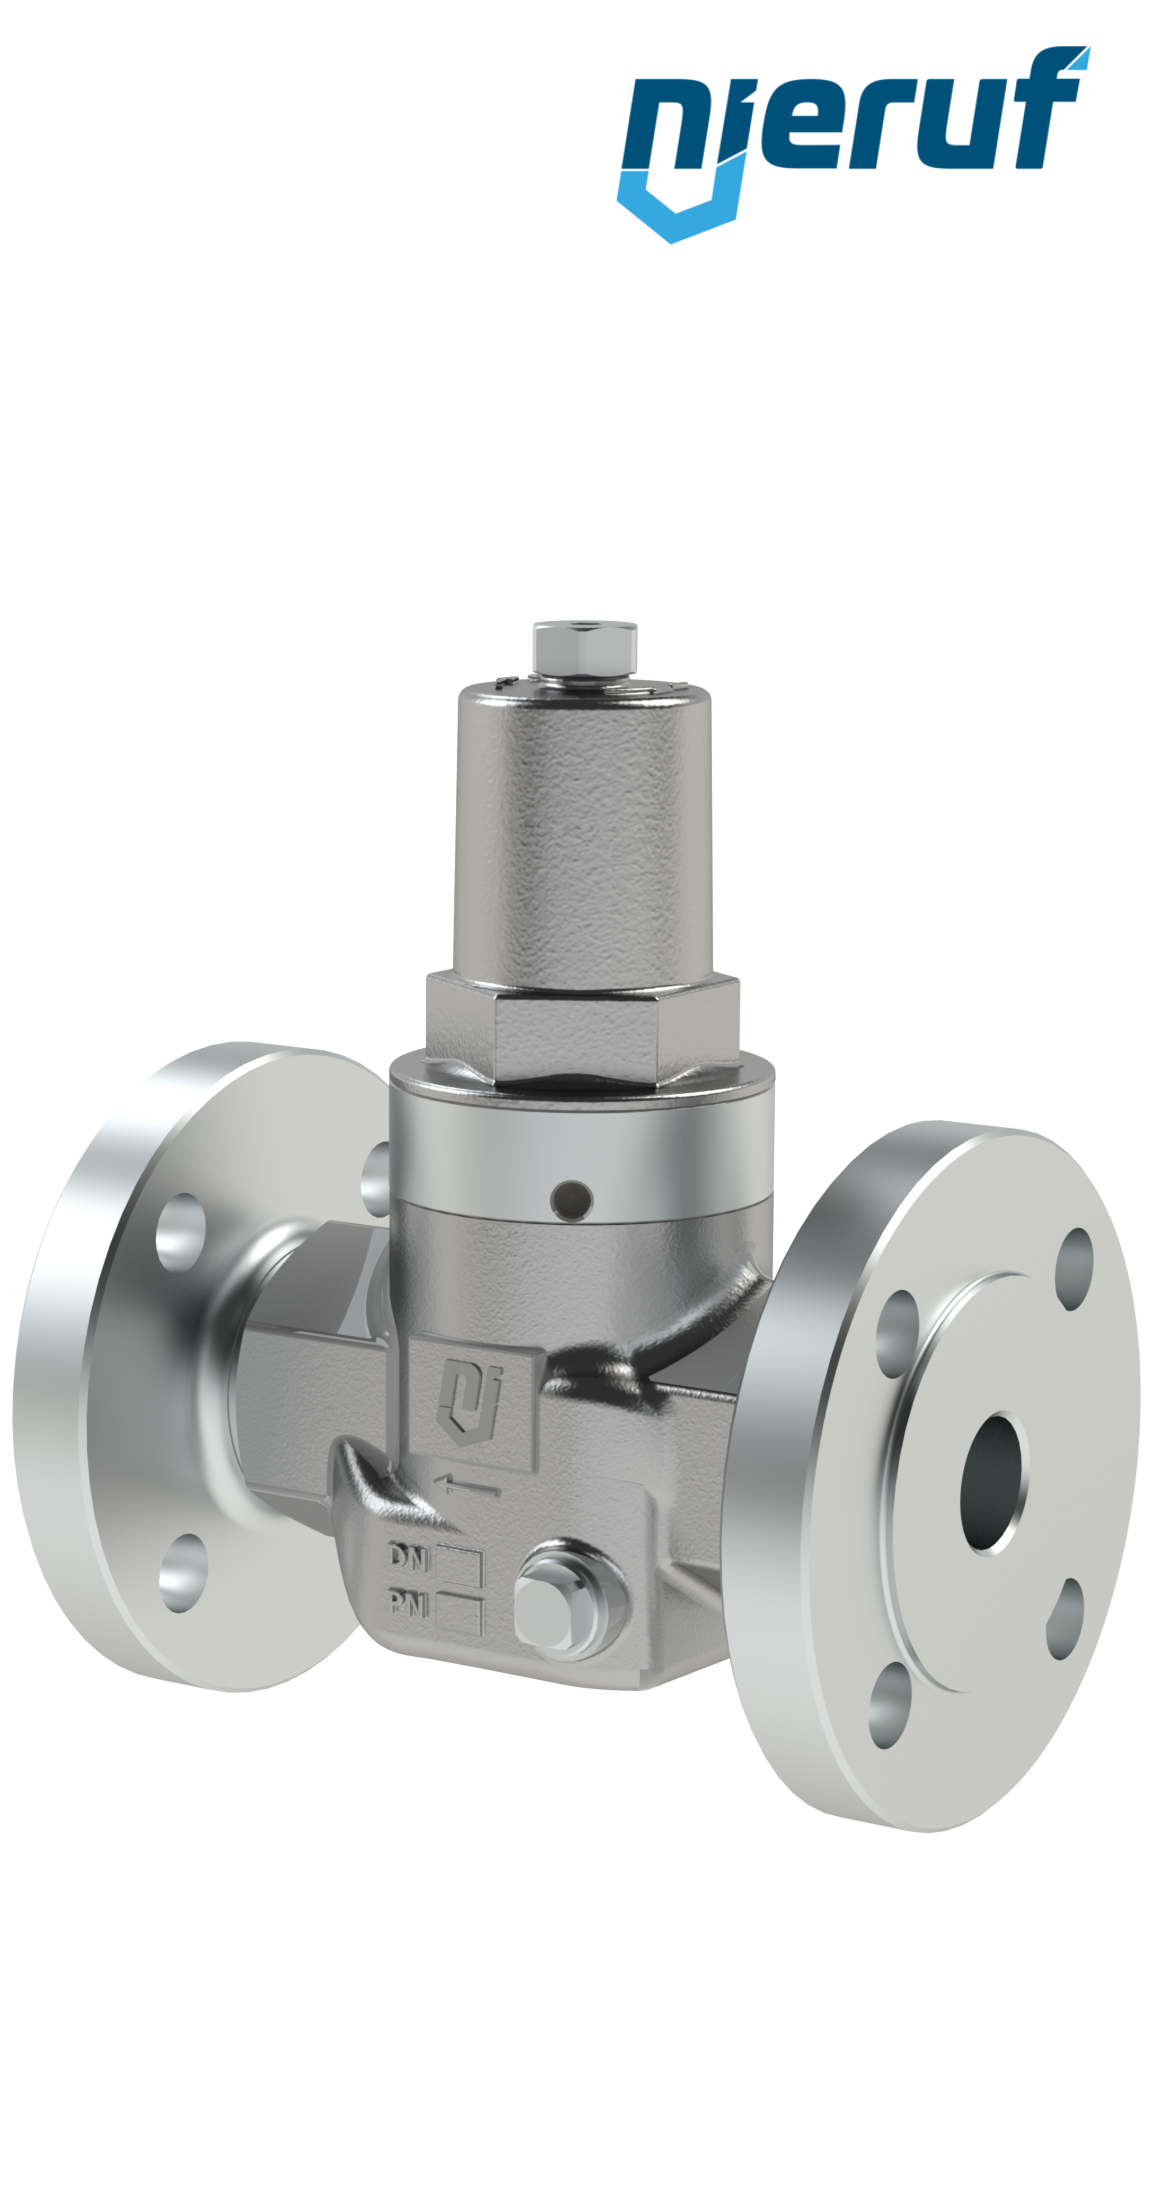 Piston-pressure reducing valve DN25 DM11 flange ANSI 150 stainless steel FPM / FKM 2.0 - 20.0 bar